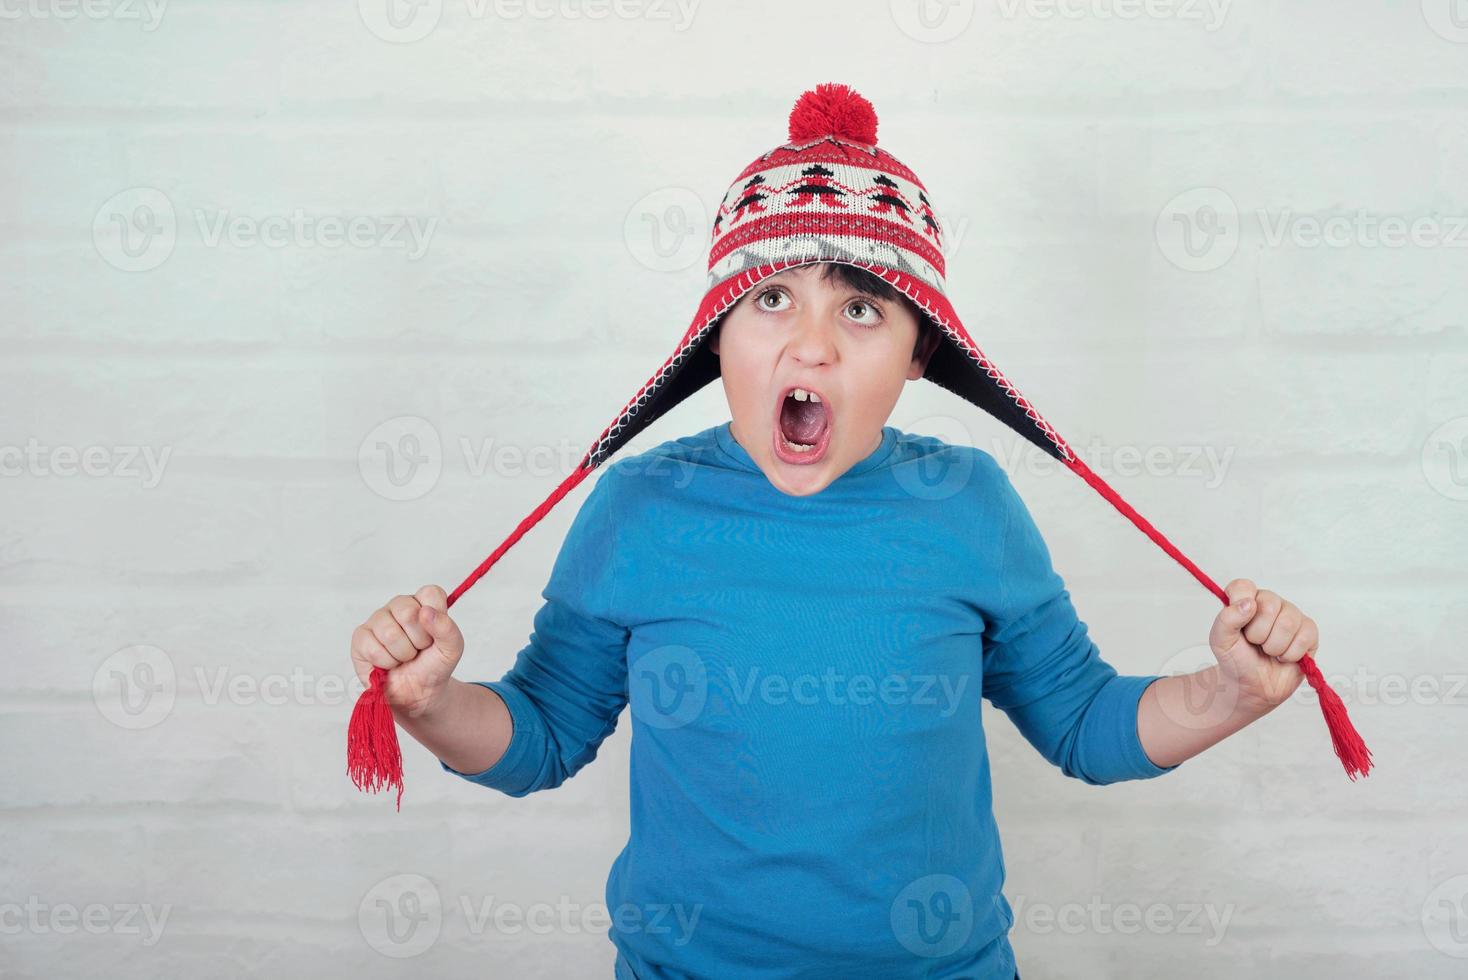 criança engraçada com chapéu de inverno foto